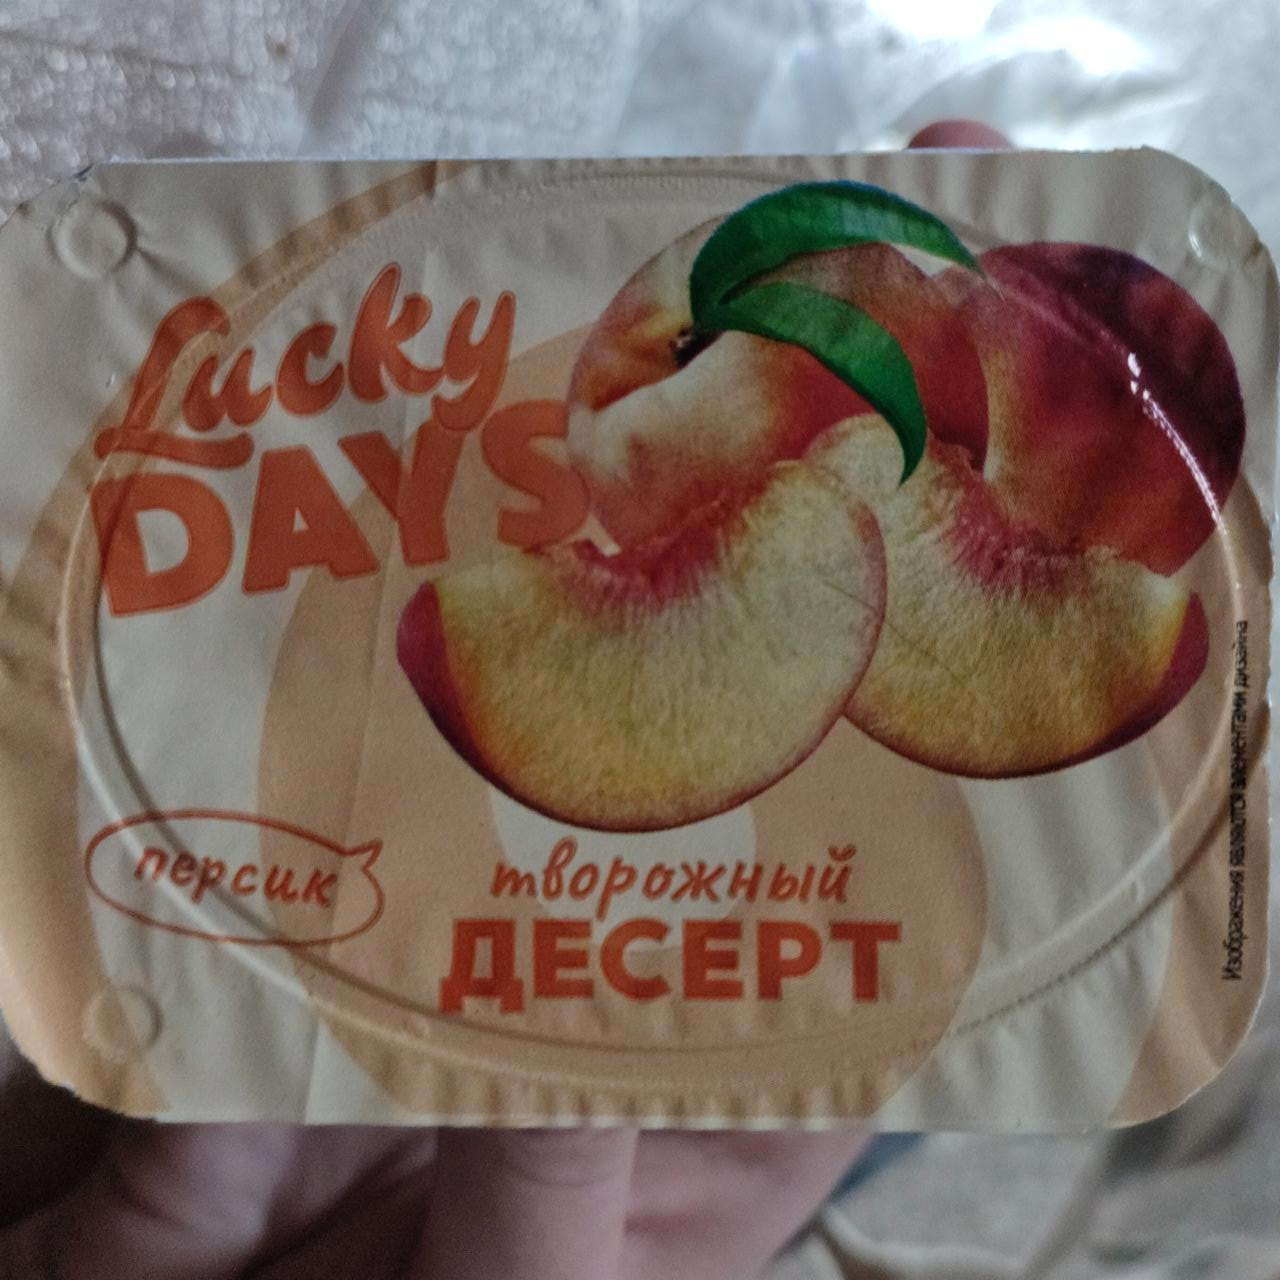 Фото - Десерт творожный персик 2.9% Lucky Days